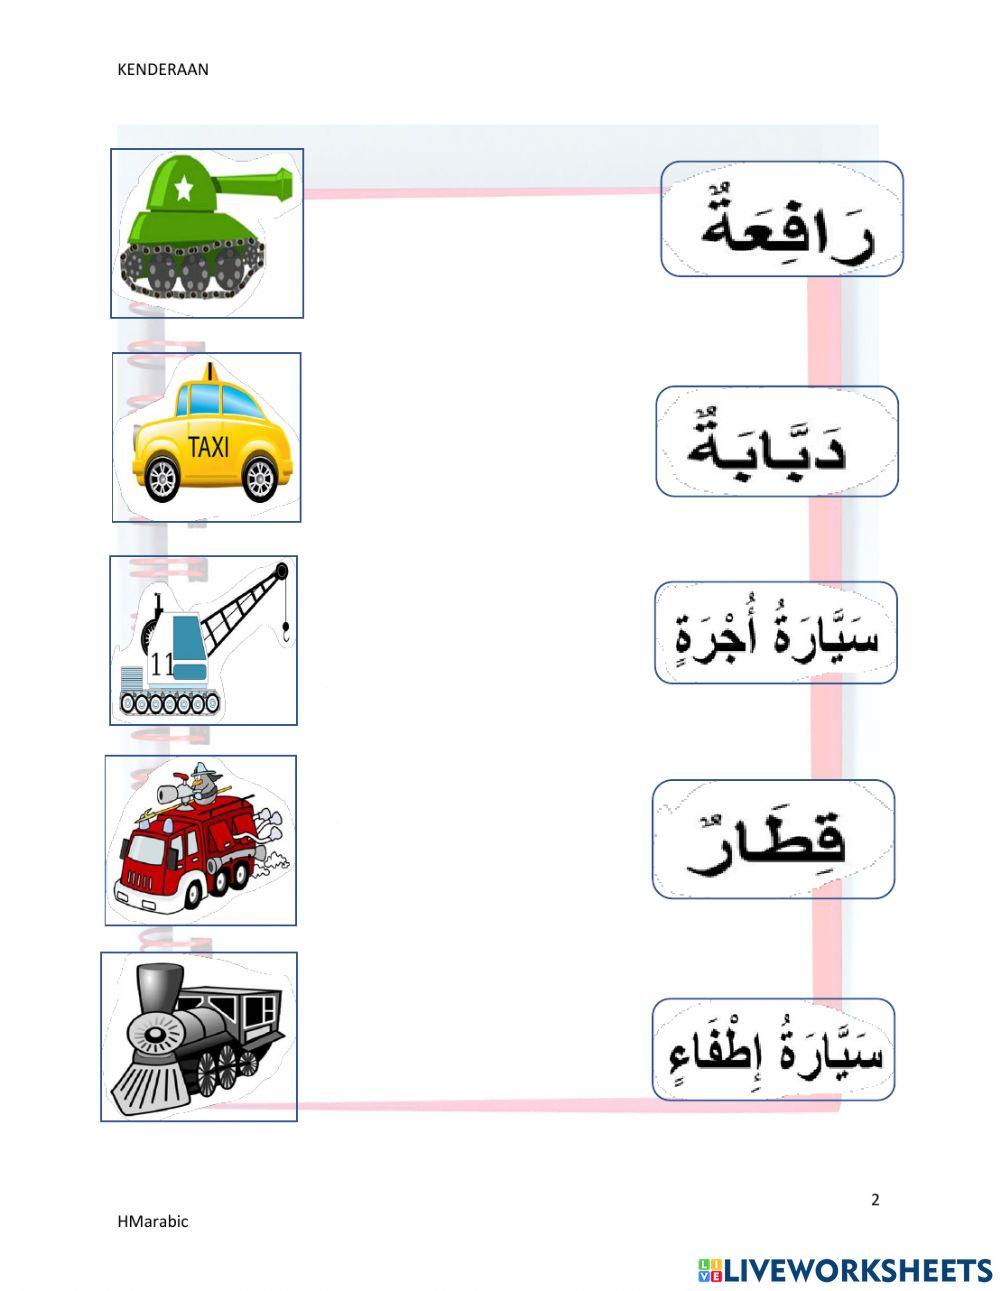 Kenderaan bahasa arab